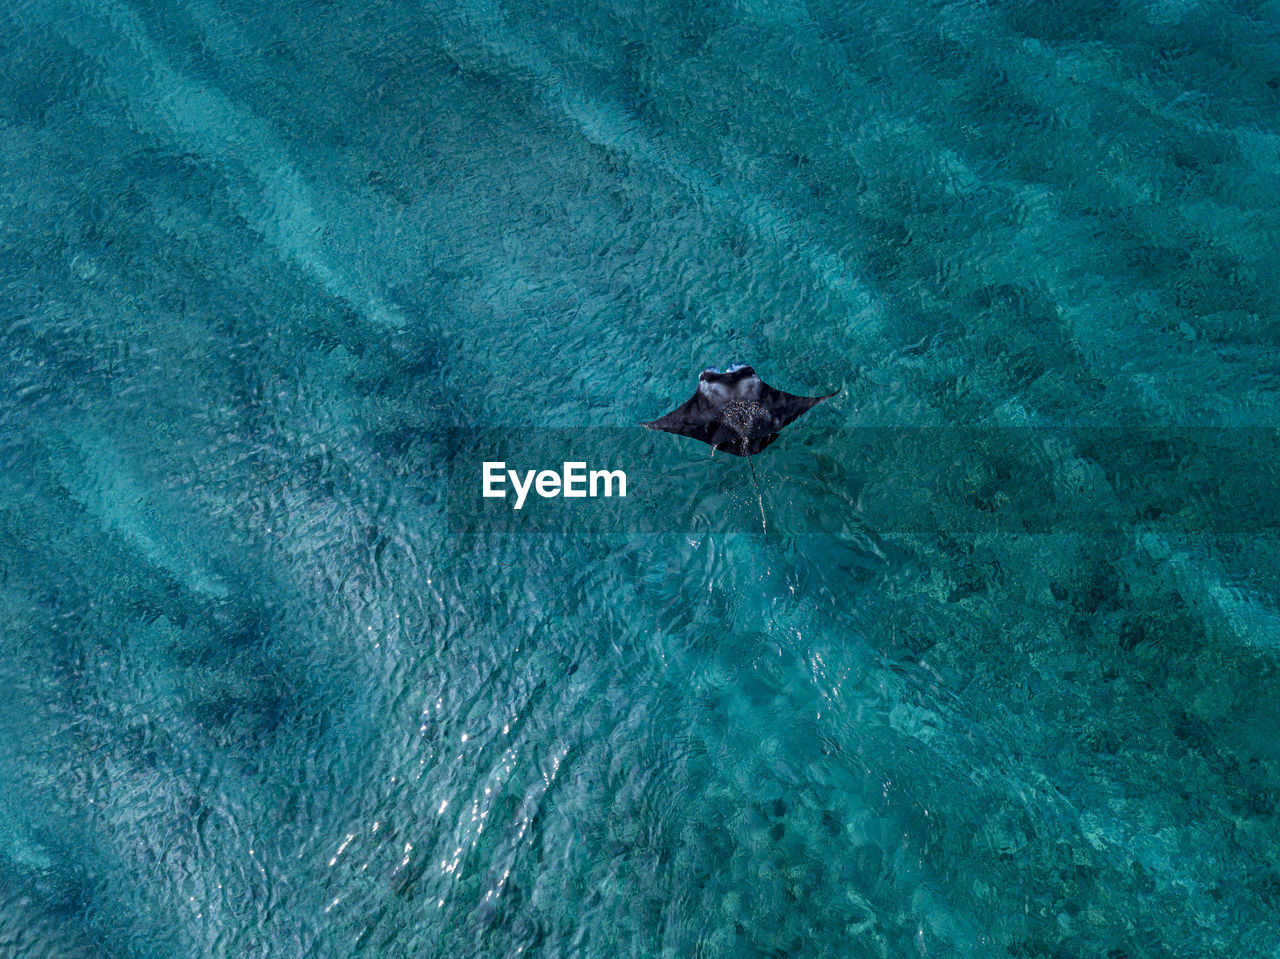 Manta ray swimming in turquoise sea at maldives